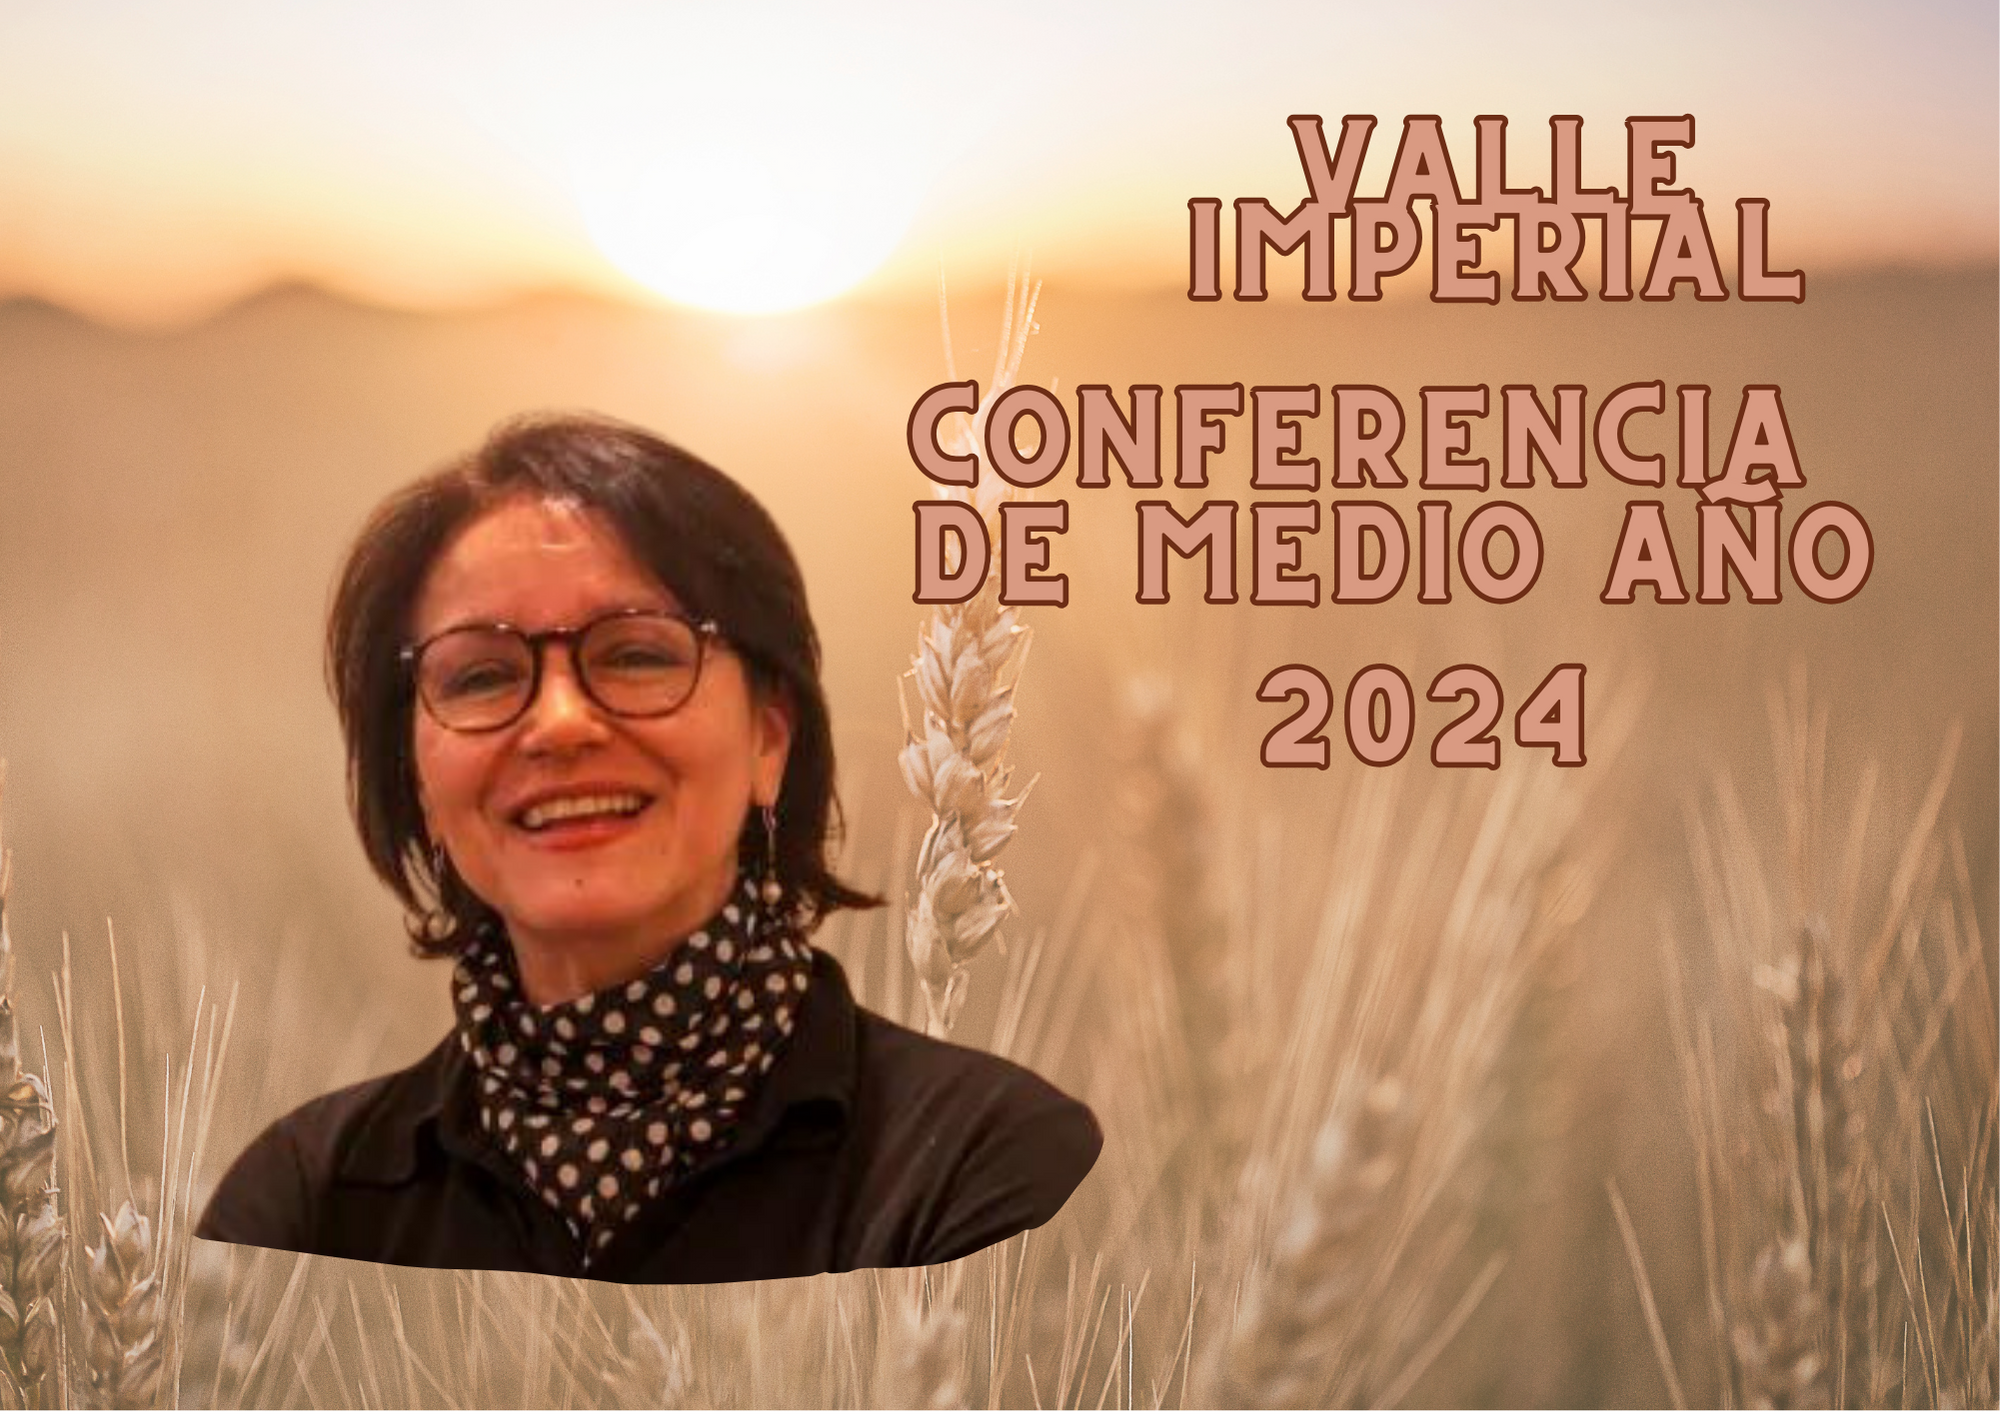 Valle Imperial-Conferencia de Medio Año